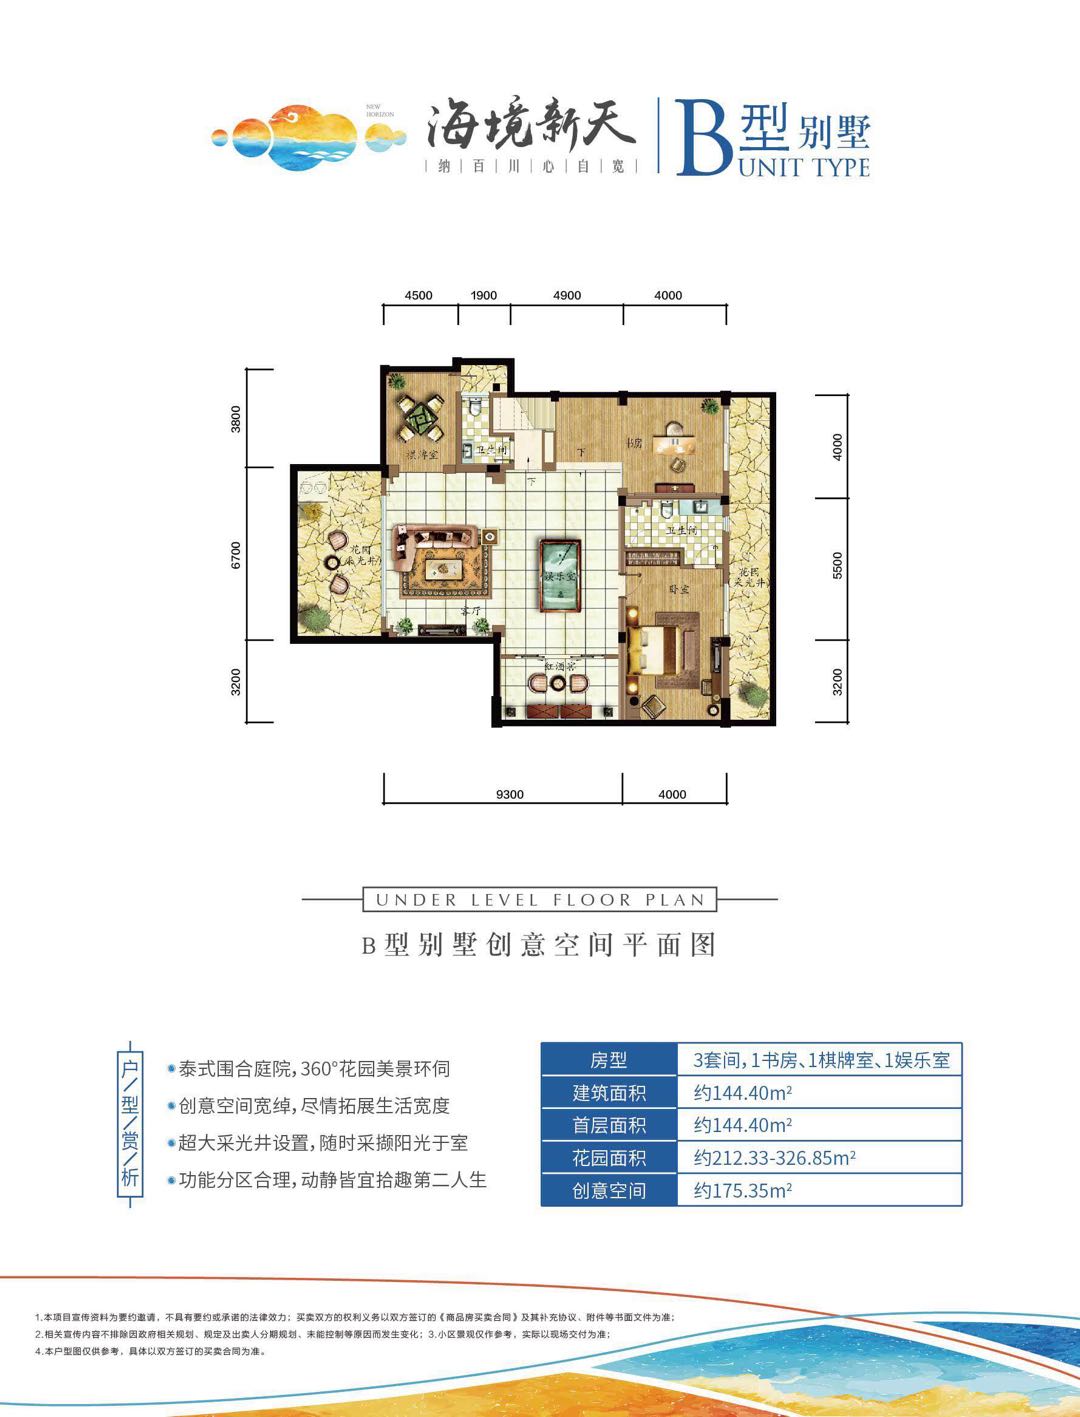 雅居乐海境新天地B型别墅创意空间平面图